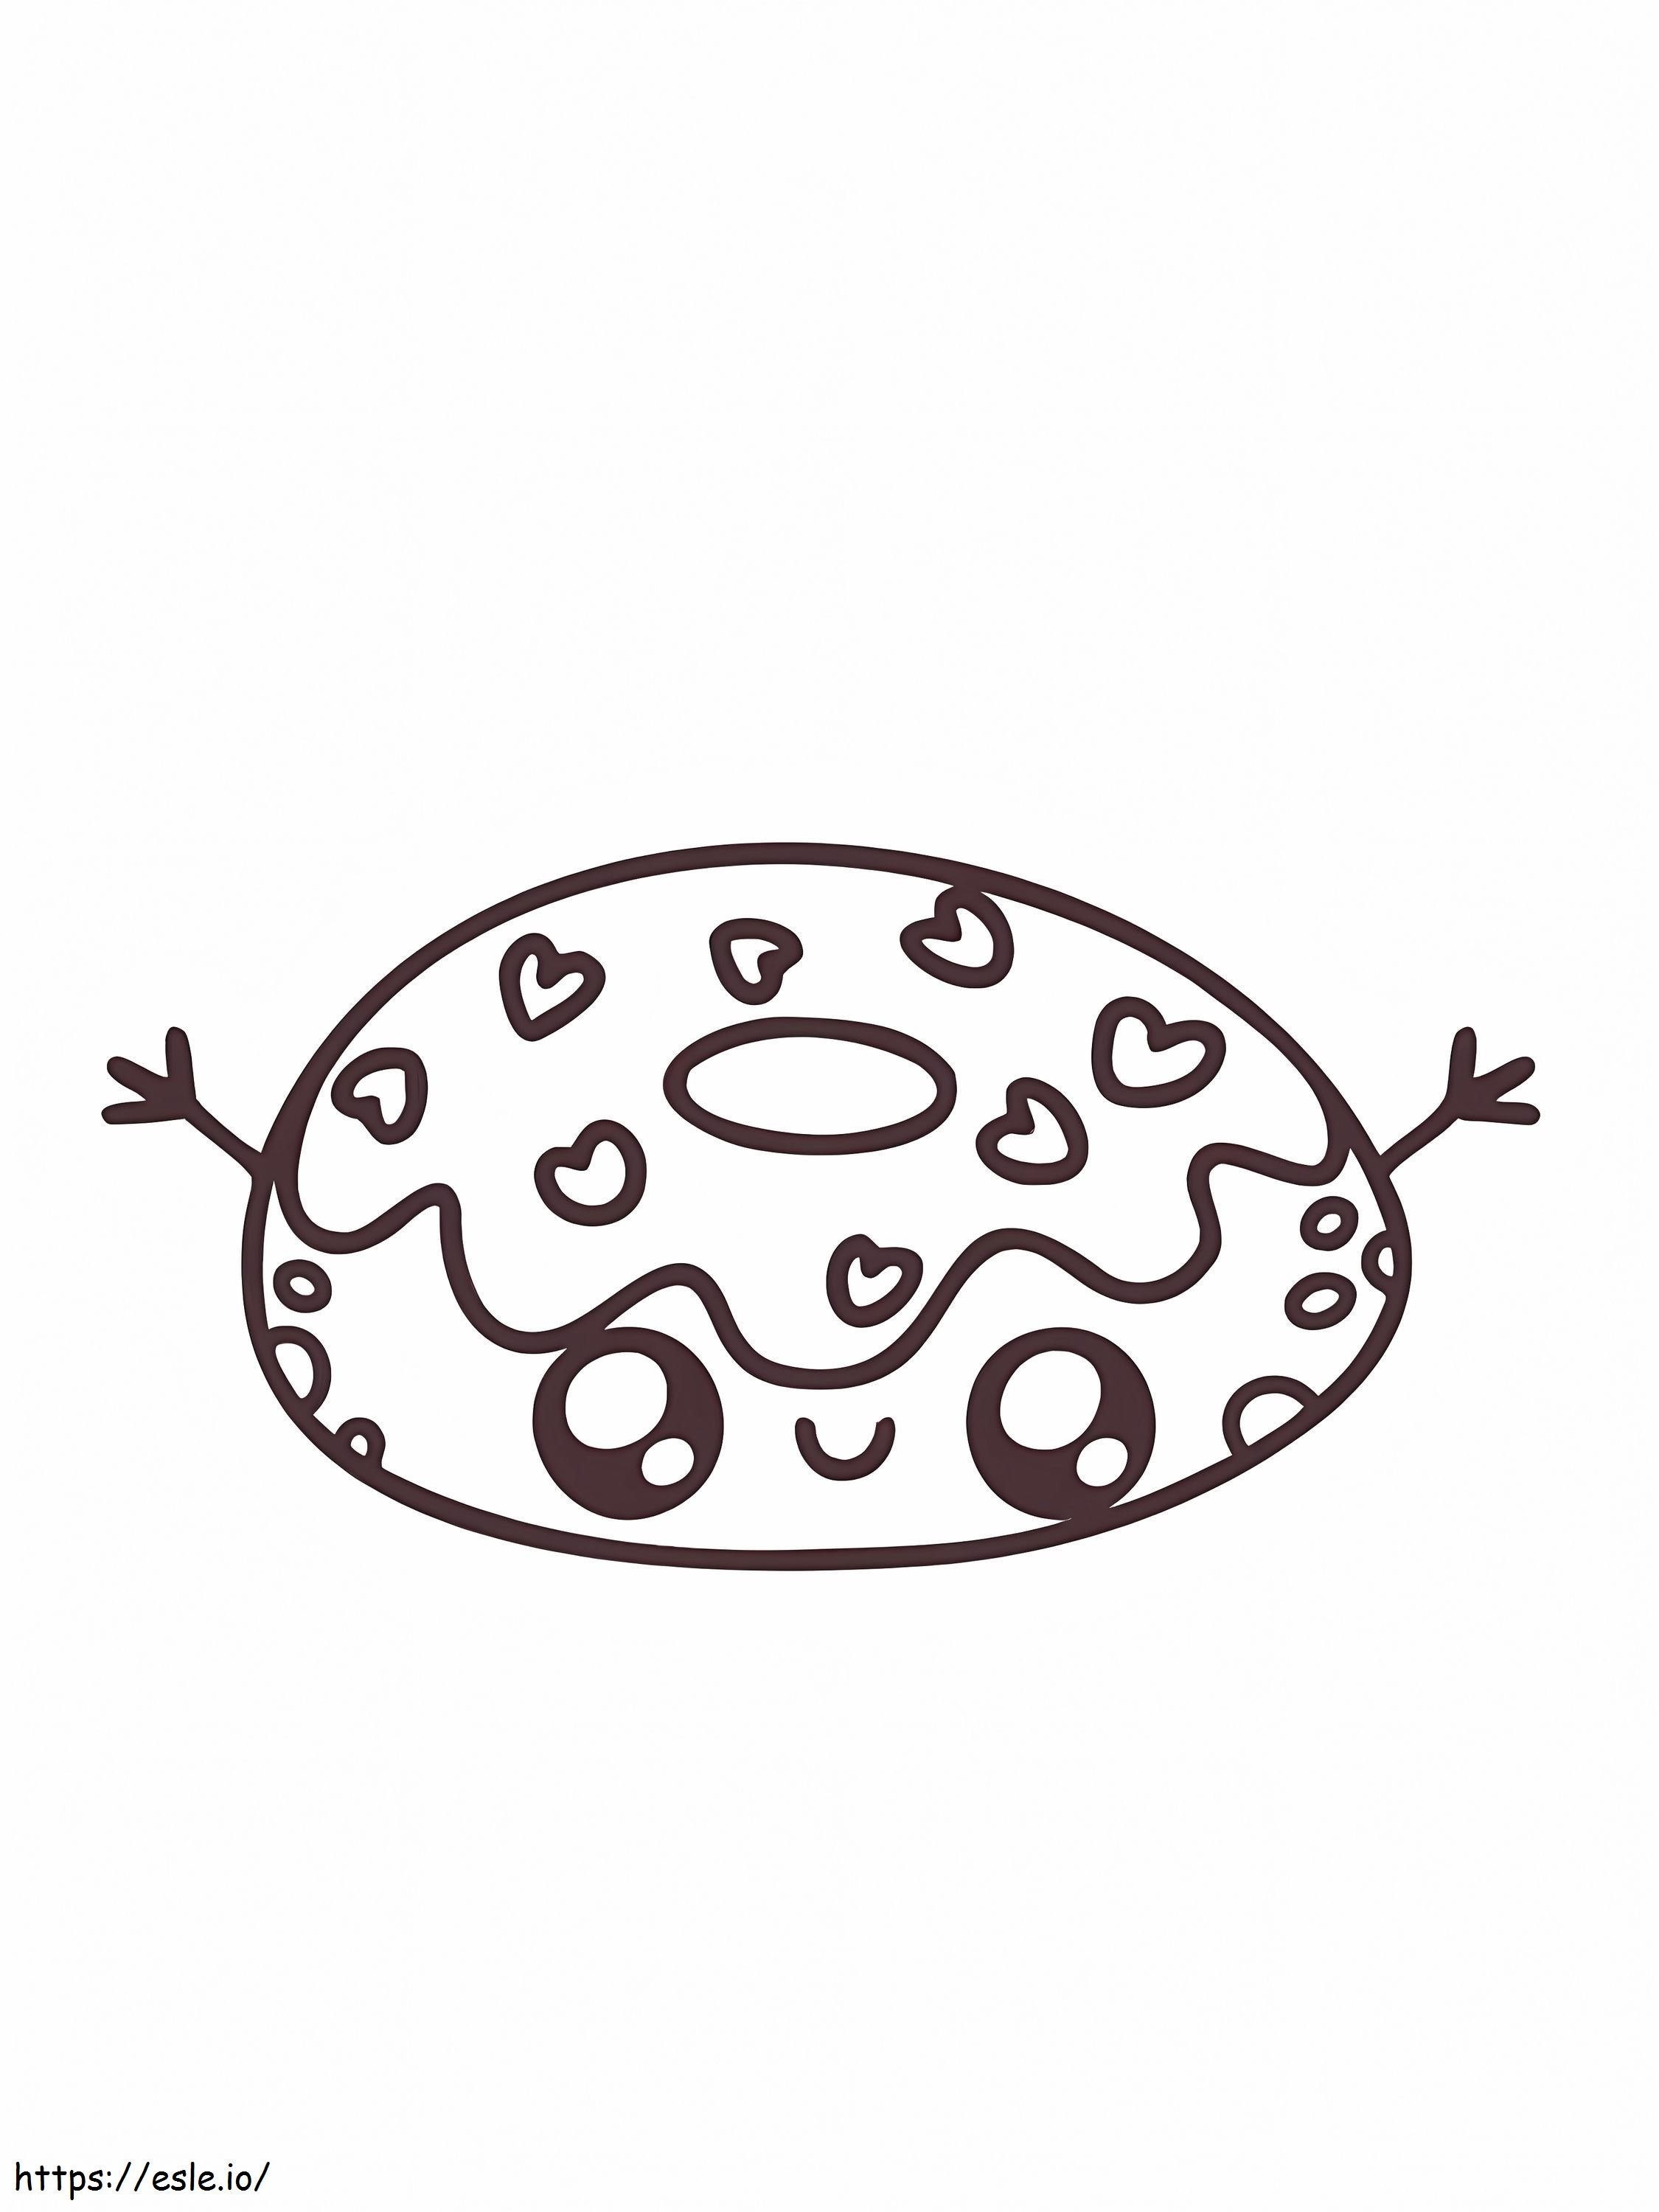 Um donut kawaii para colorir